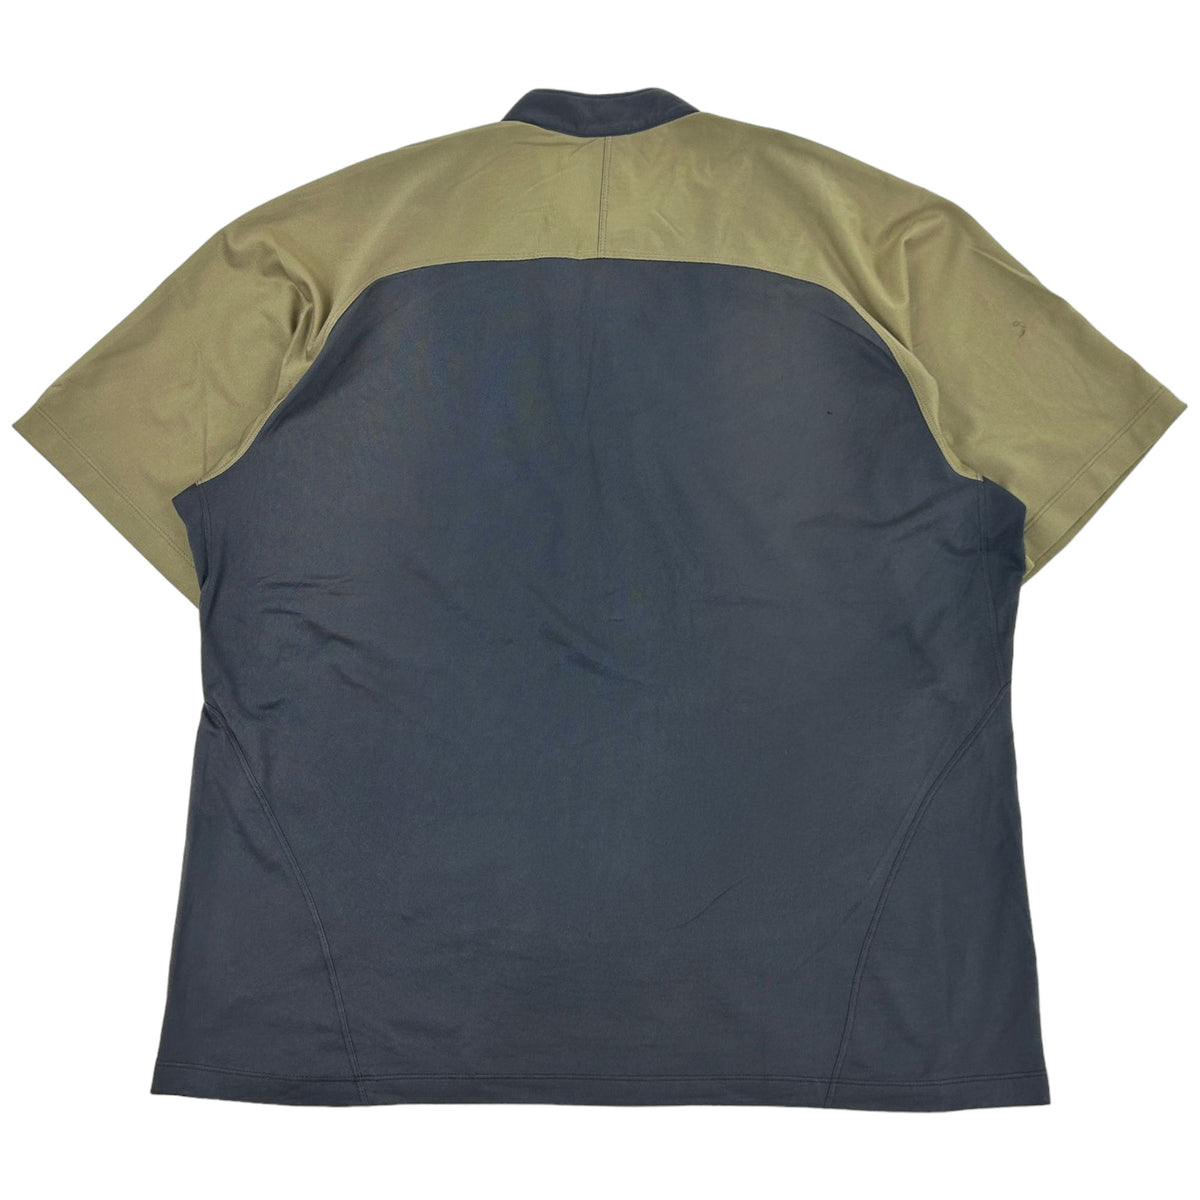 Vintage Arcteryx Two Tone Performance Zip Up T Shirt Size XL